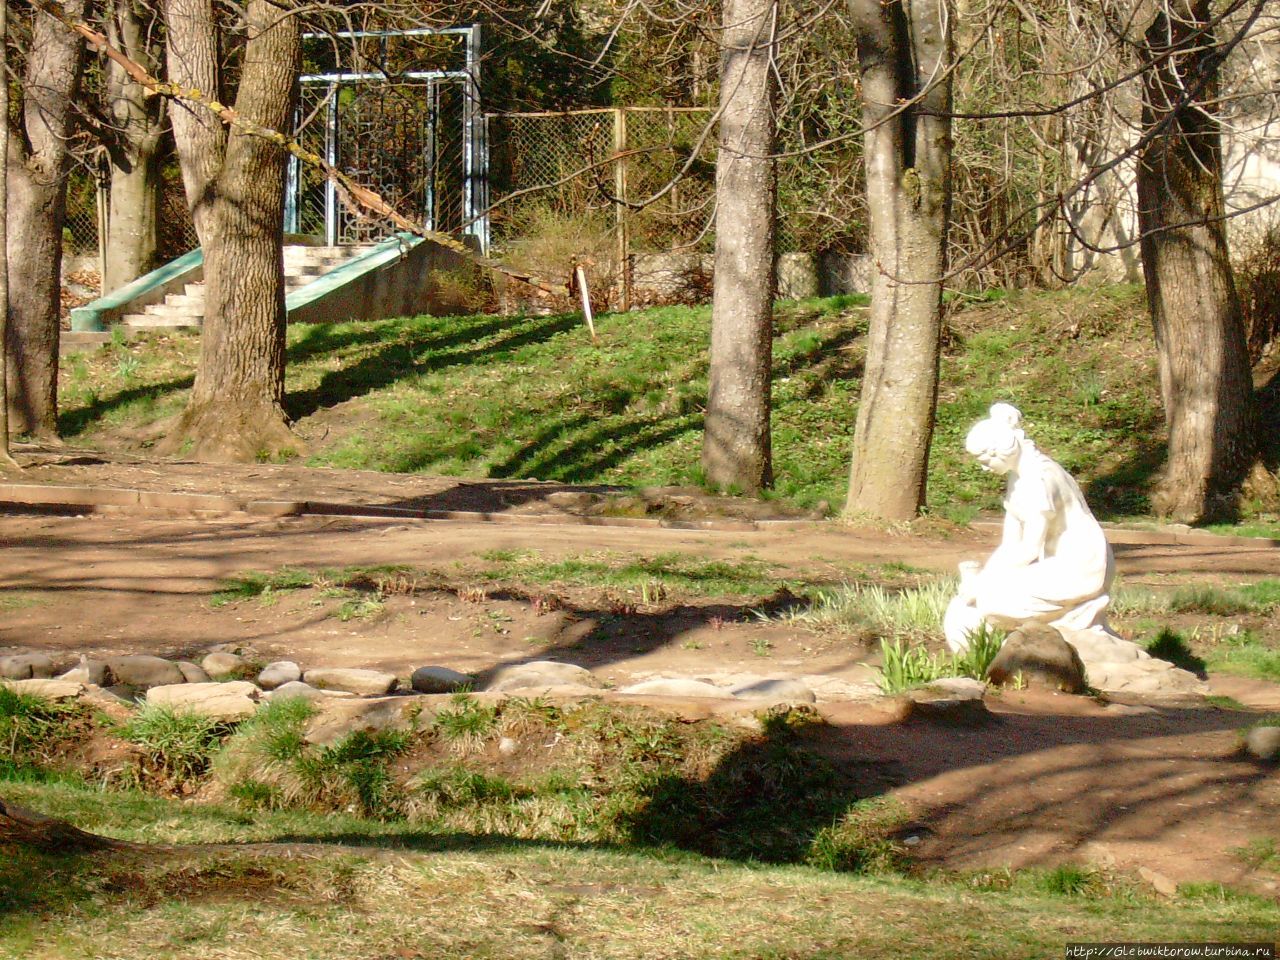 Кисловодск в мае отзывы. Кисловодск в апреле. Кисловодский парк в апреле. Кисловодский парк в мае. Природа Кисловодска в апреле.